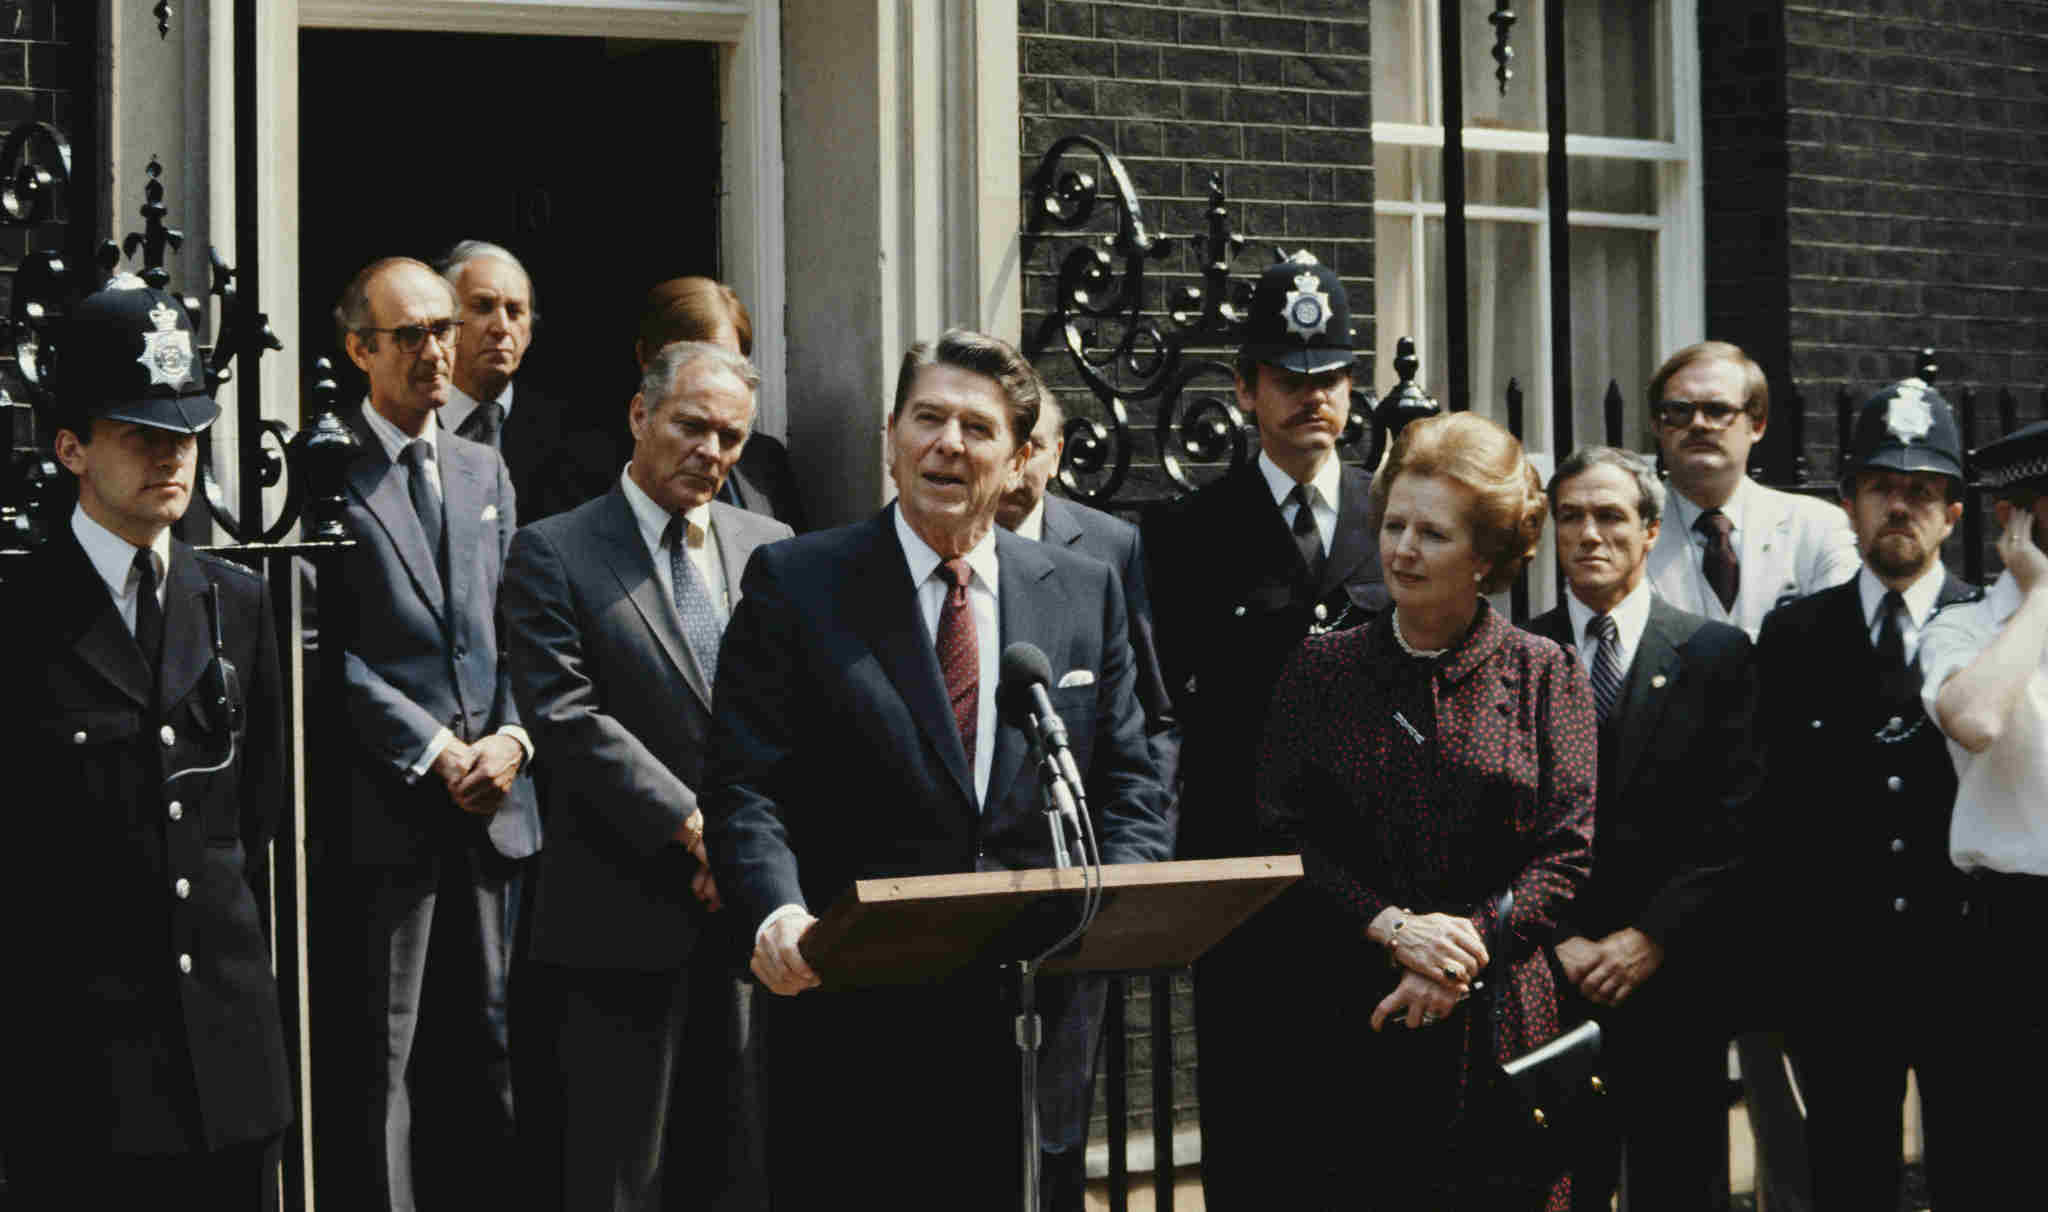 Le président américain Ronald Reagan prononce un discours devant le 10 Downing Street, le 9 juin 1982. Au cours de cette visite, Reagan a exposé sa vision de la National Endowment for Democracy. (Photo : Fox Photos/Hulton Archive/Getty Images)